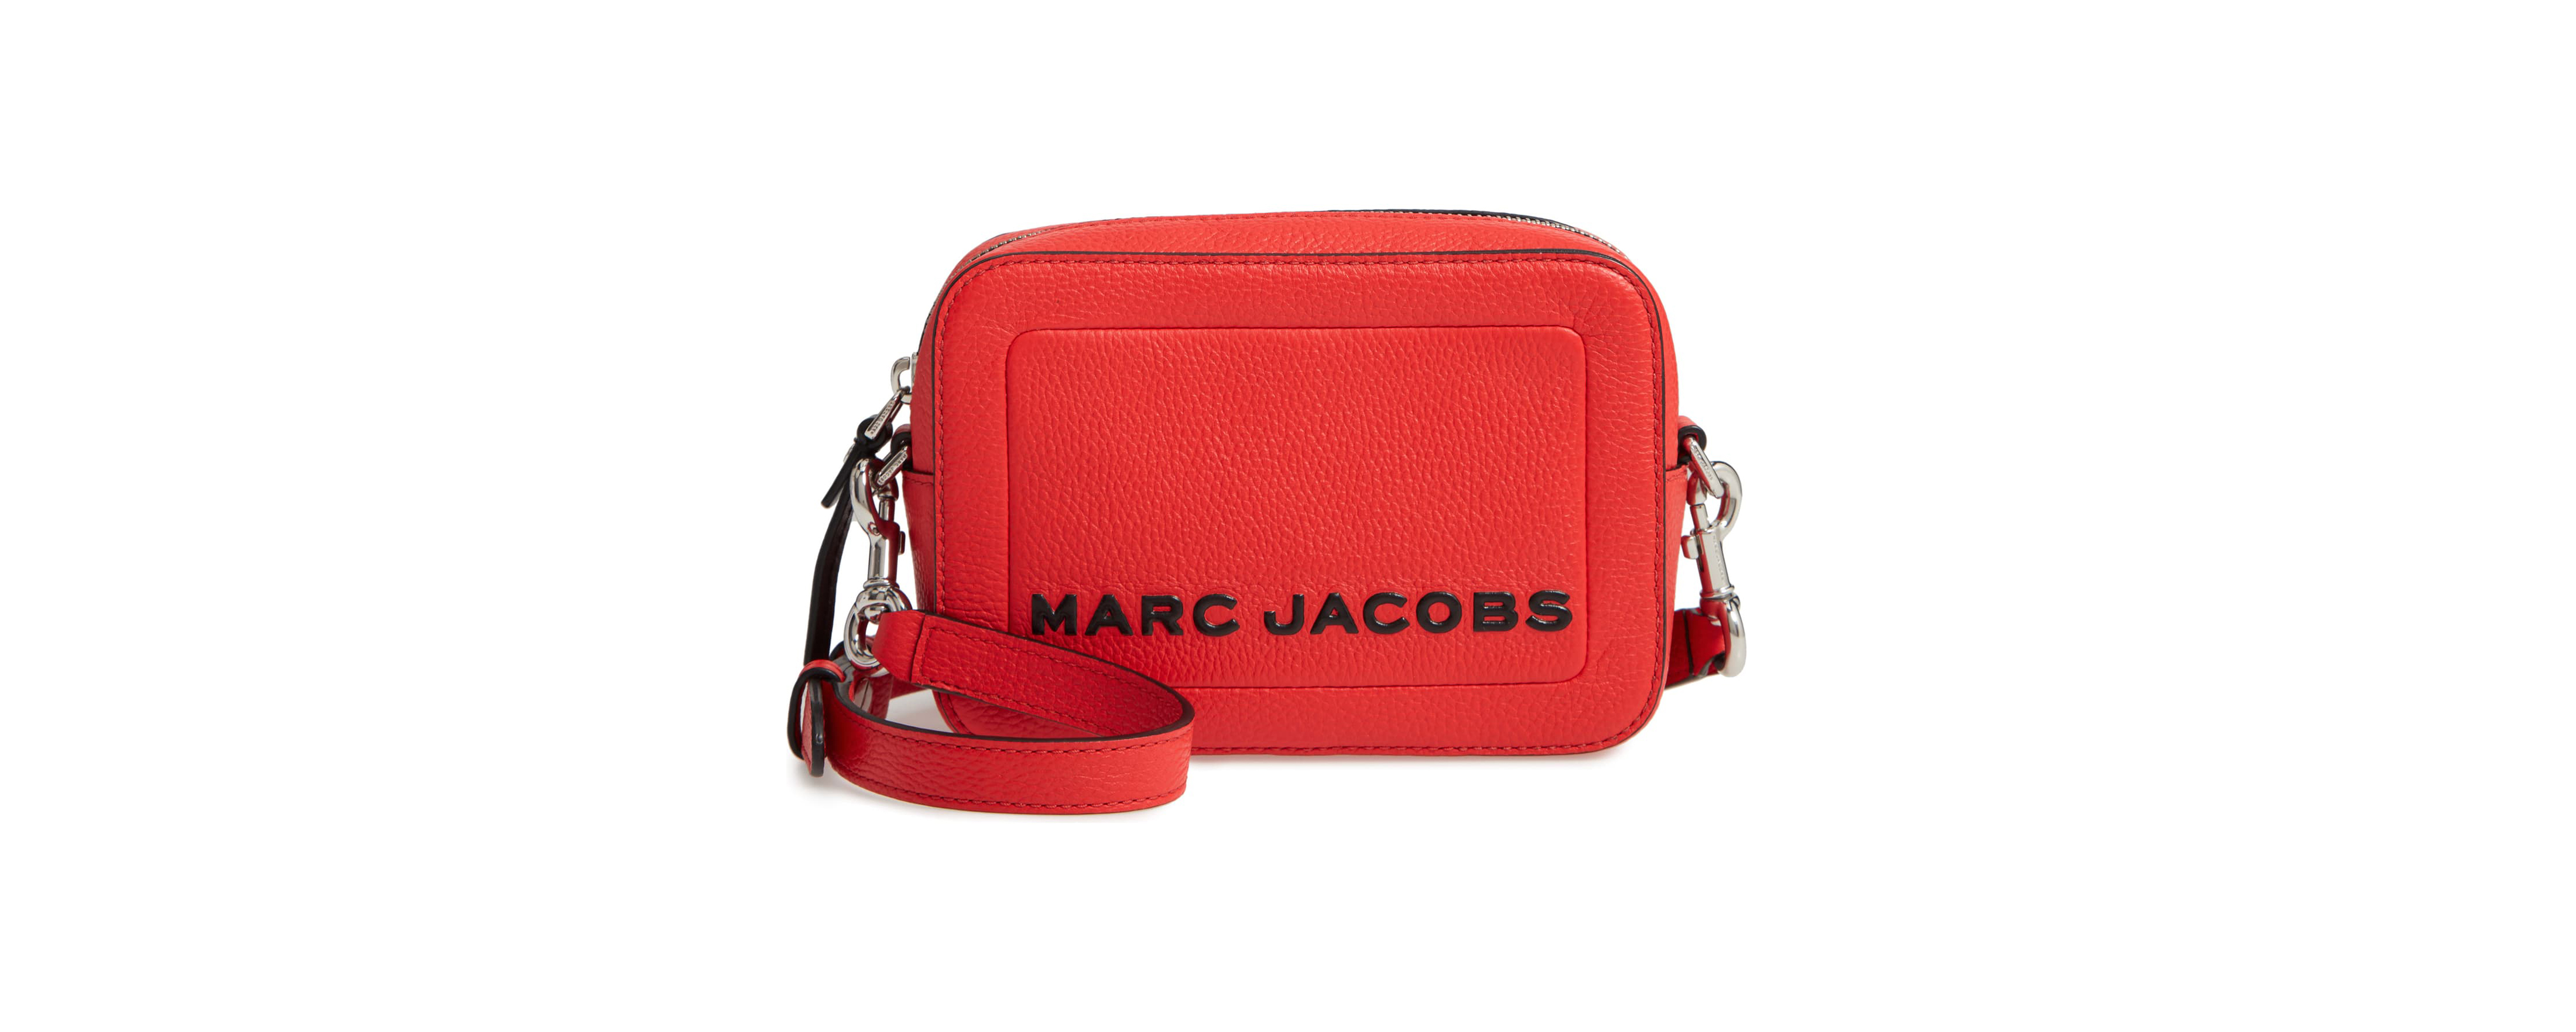 marc jacobs purse sale